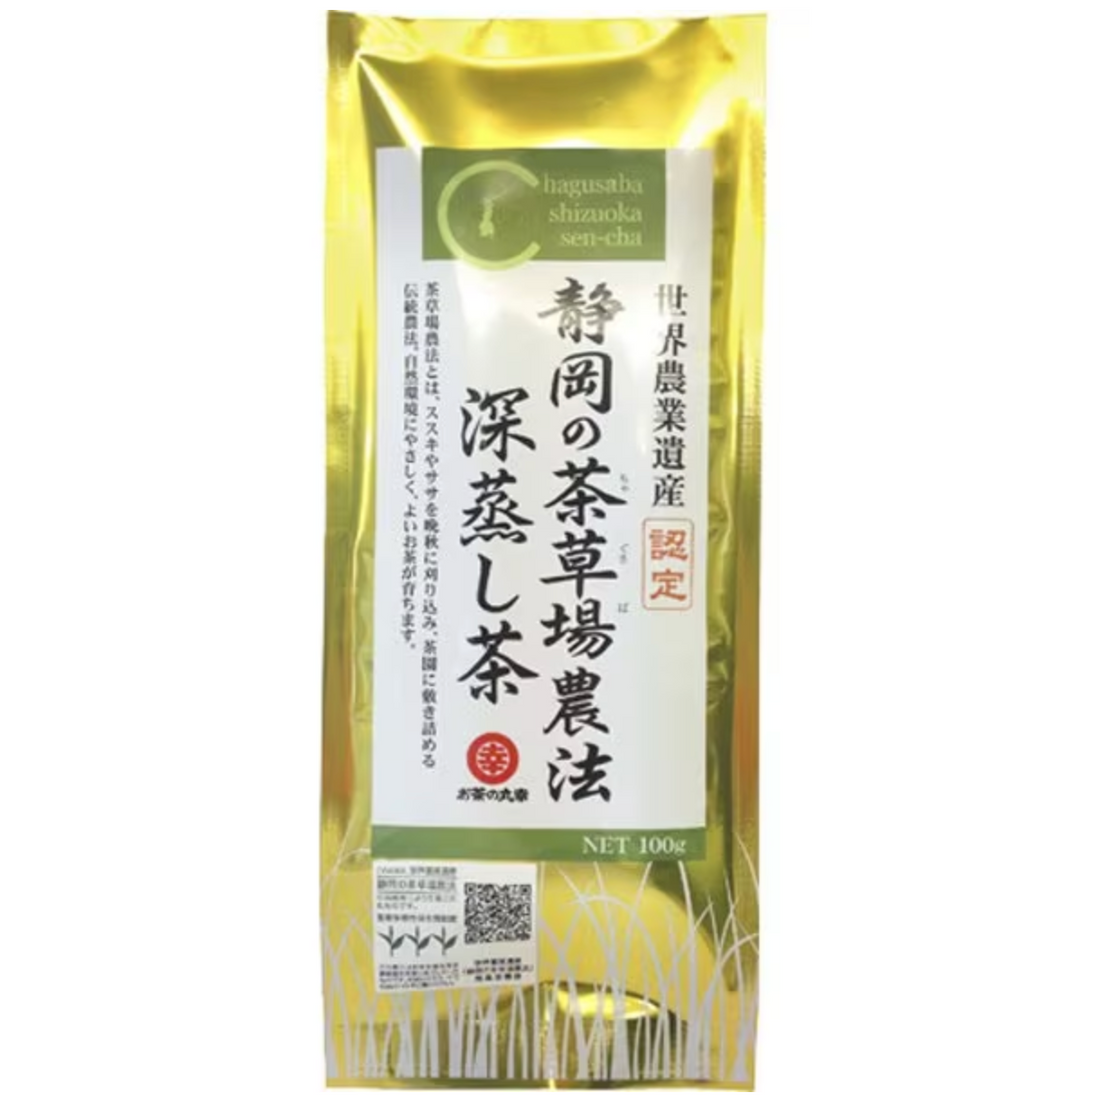 Ochanomaruko Deep-steamed tea from Shizuoka&